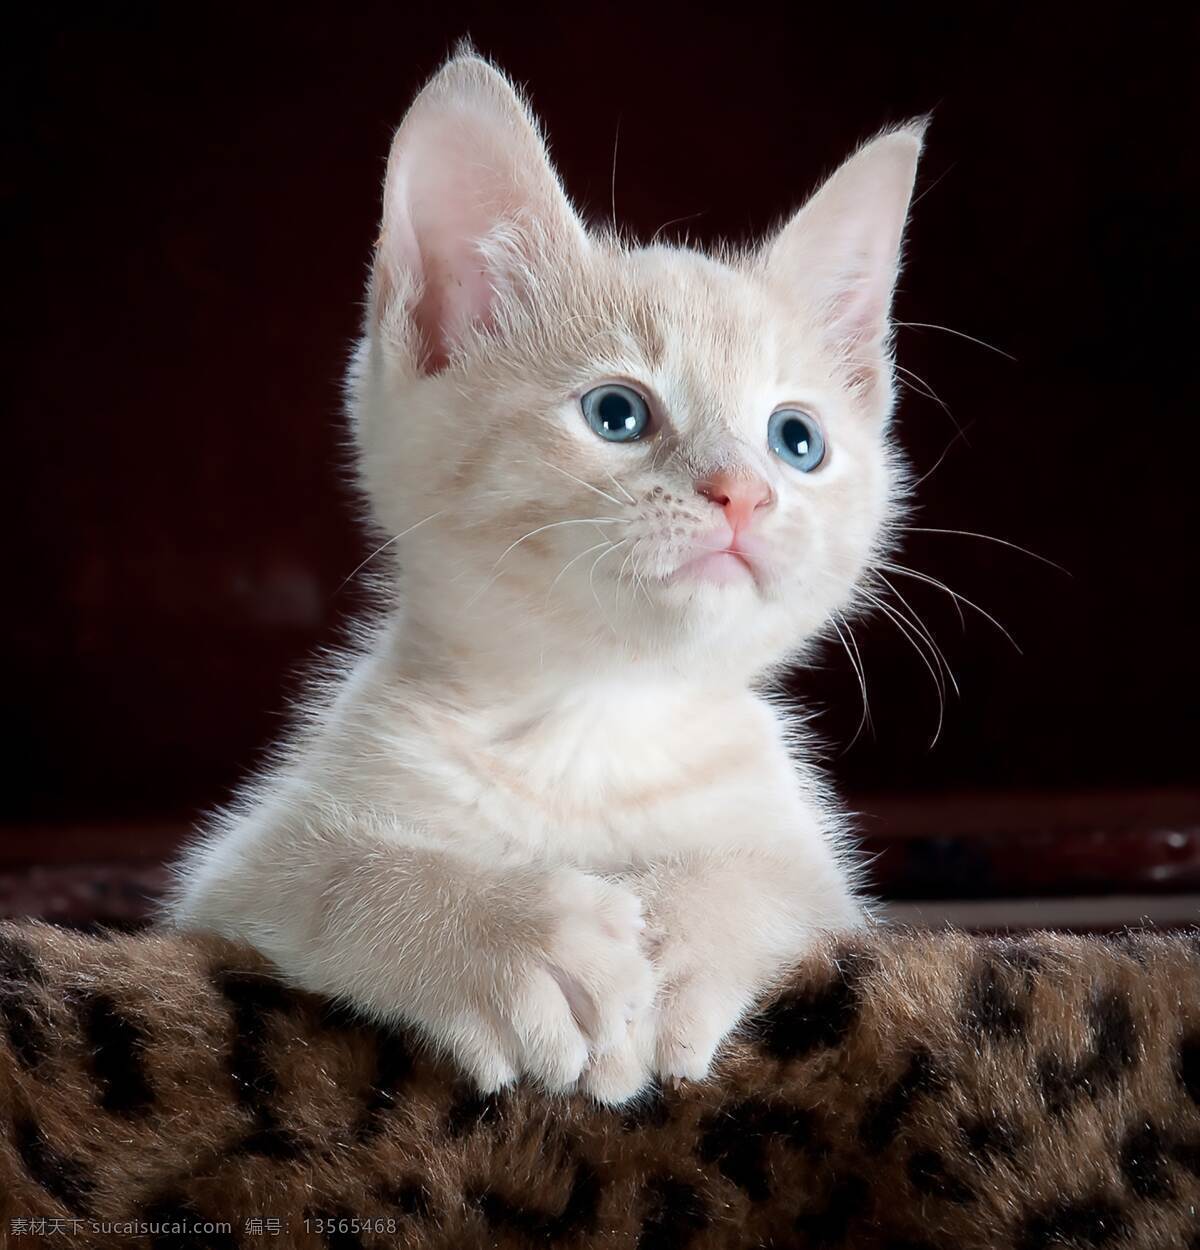 猫咪 小猫 毛茸茸 猫爪 肉垫 可爱 小动物 动物 英短 美短 蓝猫 布偶 橘猫 家猫 流浪猫 摄影图 生物世界 家禽家畜